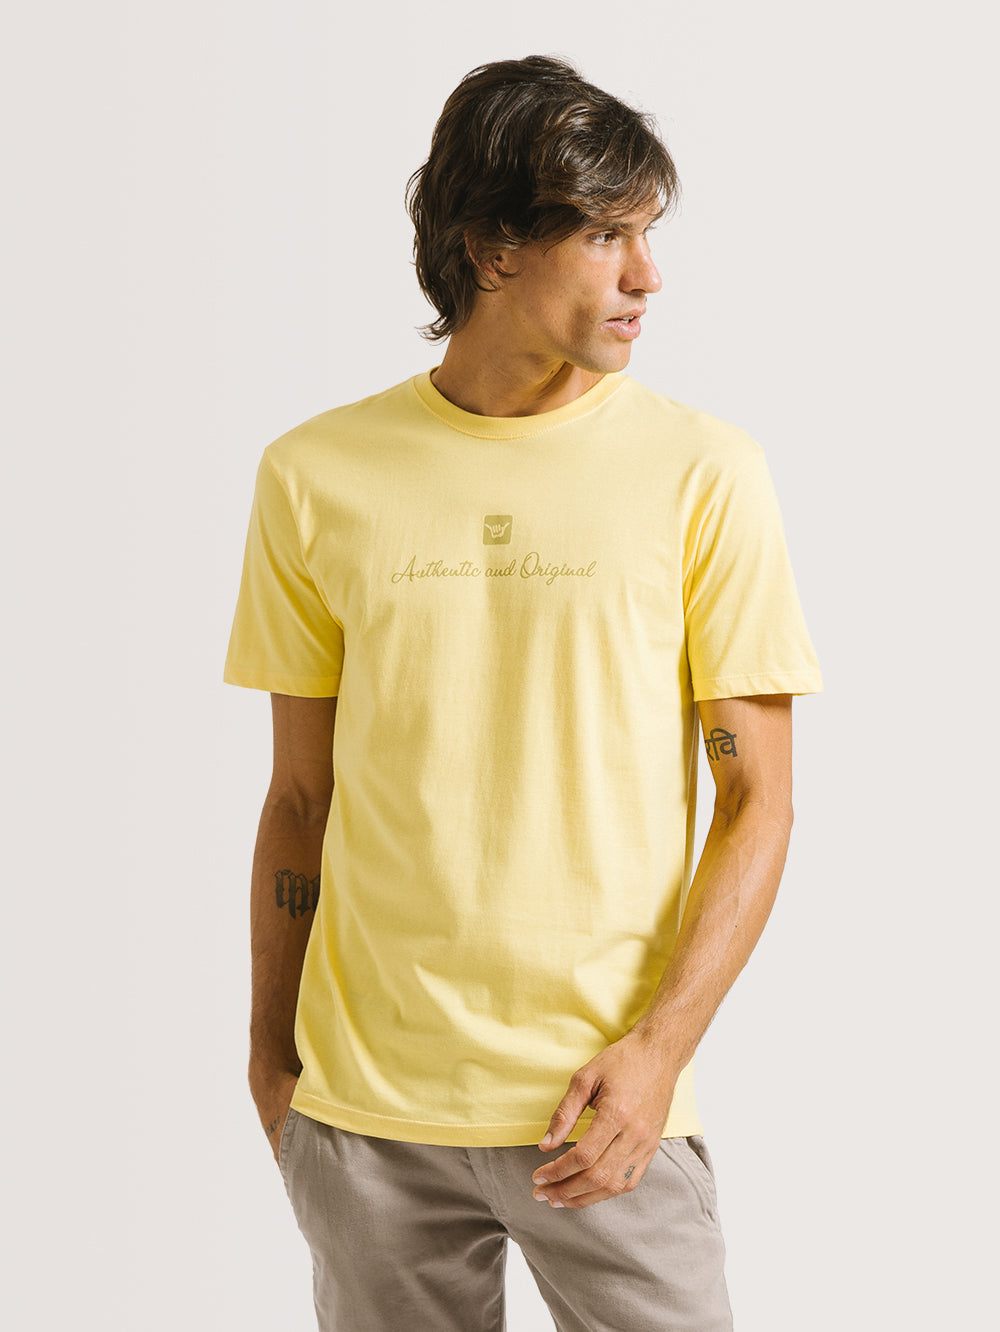 Camiseta Hang Loose Sunshine Amarela